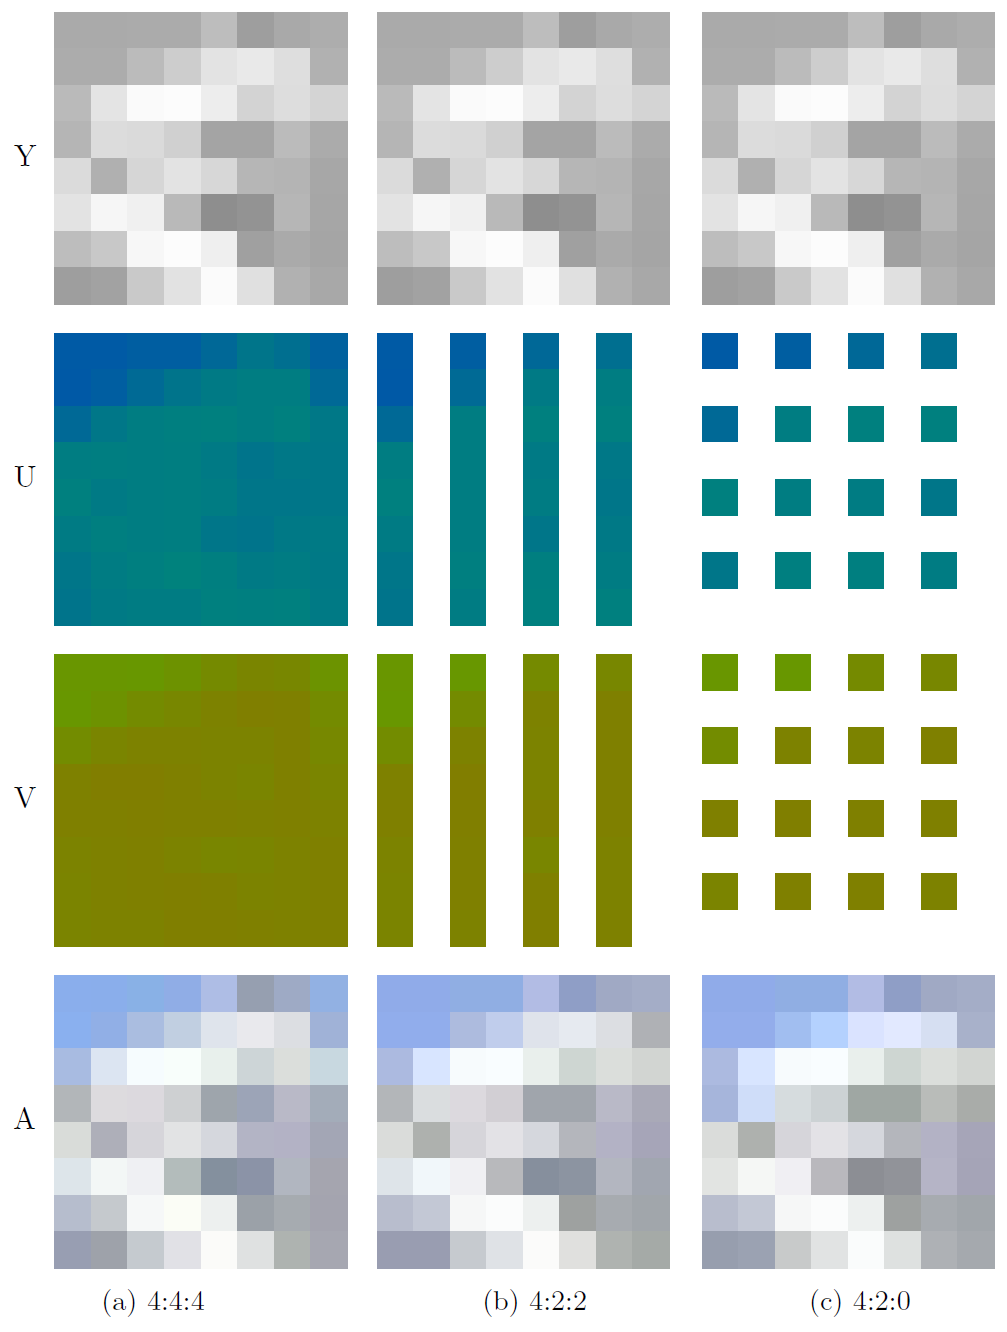 Schematische Darstellung der Farbunterabtastung. Bei 4:4:4 werden die Informationen aller drei Kanäle vollständig abgetastet. Bei 4:2:2 wird der Y-Kanal vollständig und im U- und V-Kanal jeweils nur jeder zweite Pixel jeder Zeile gelesen. Bei 4:2:0 wird der Y-Kanal ebenfalls vollständig gelesen, während die Farbkanäle U und V jeweils nur zur Hälfte in der Horizontalen und in der Vertikalen gelesen werden, also nur jeder zweite Pixel in jeder zweiten Zeile. Werden die drei Kanäle zusammengerechnet, weisen die Gesamtbilder optisch kaum sichtbare Unterschiede auf.